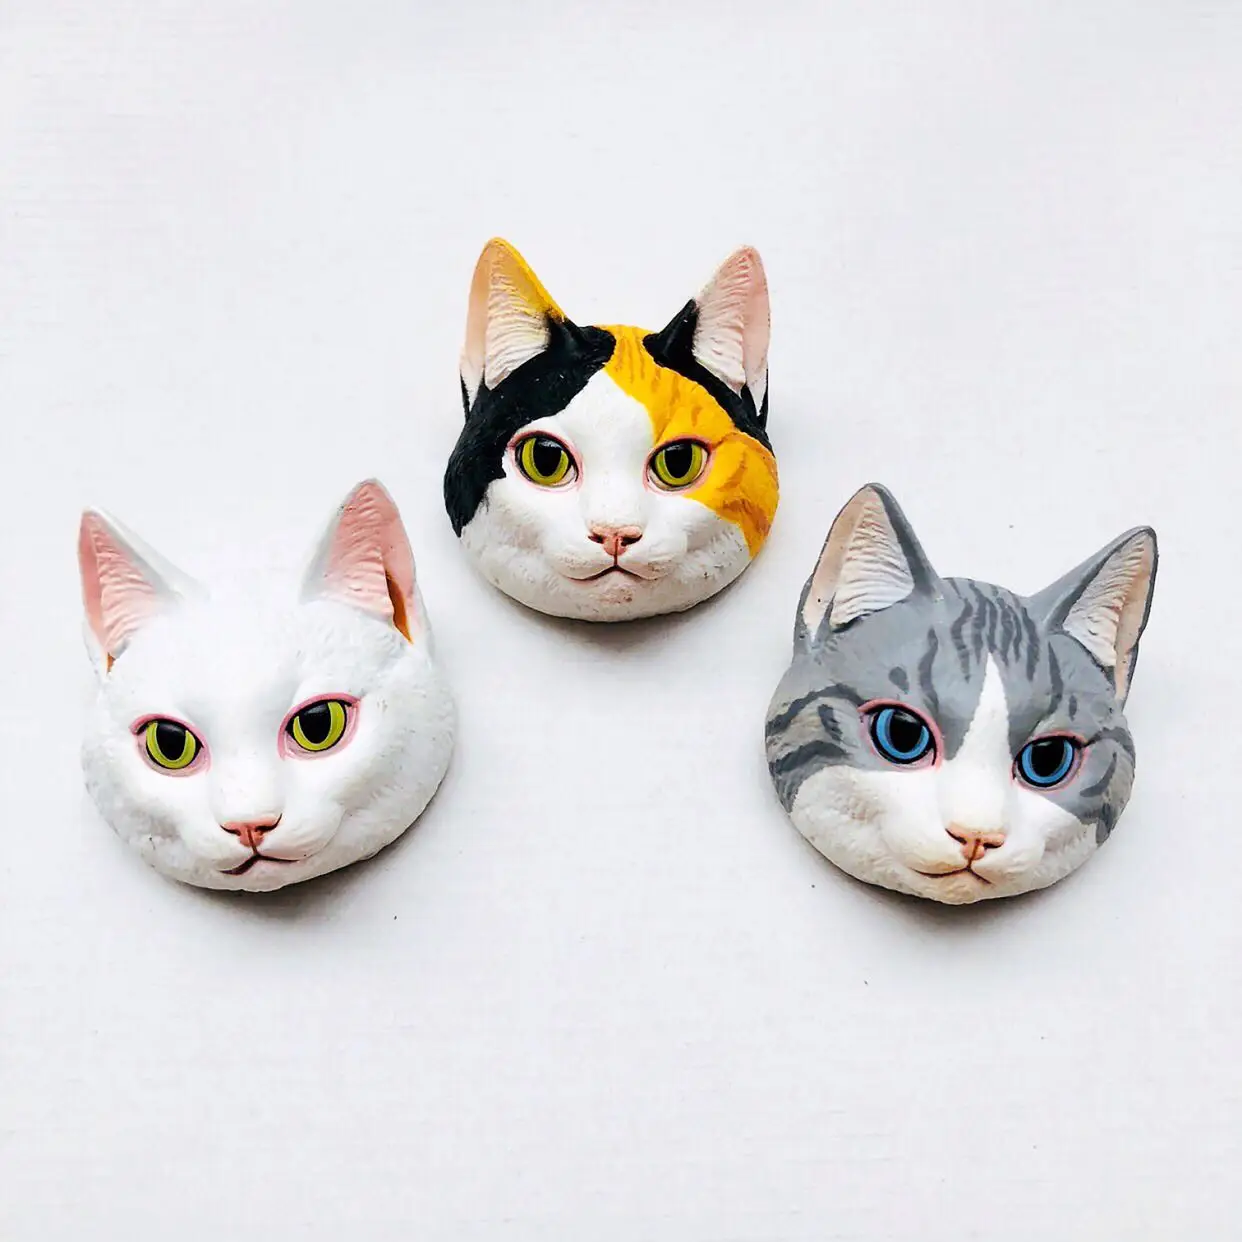 Linda Série do Gato Gato Laranja de Chita Gato Branco, Gato Bonito DIY Figura de Ação do Modelo de Ornamentos Brinquedos Presentes das Crianças